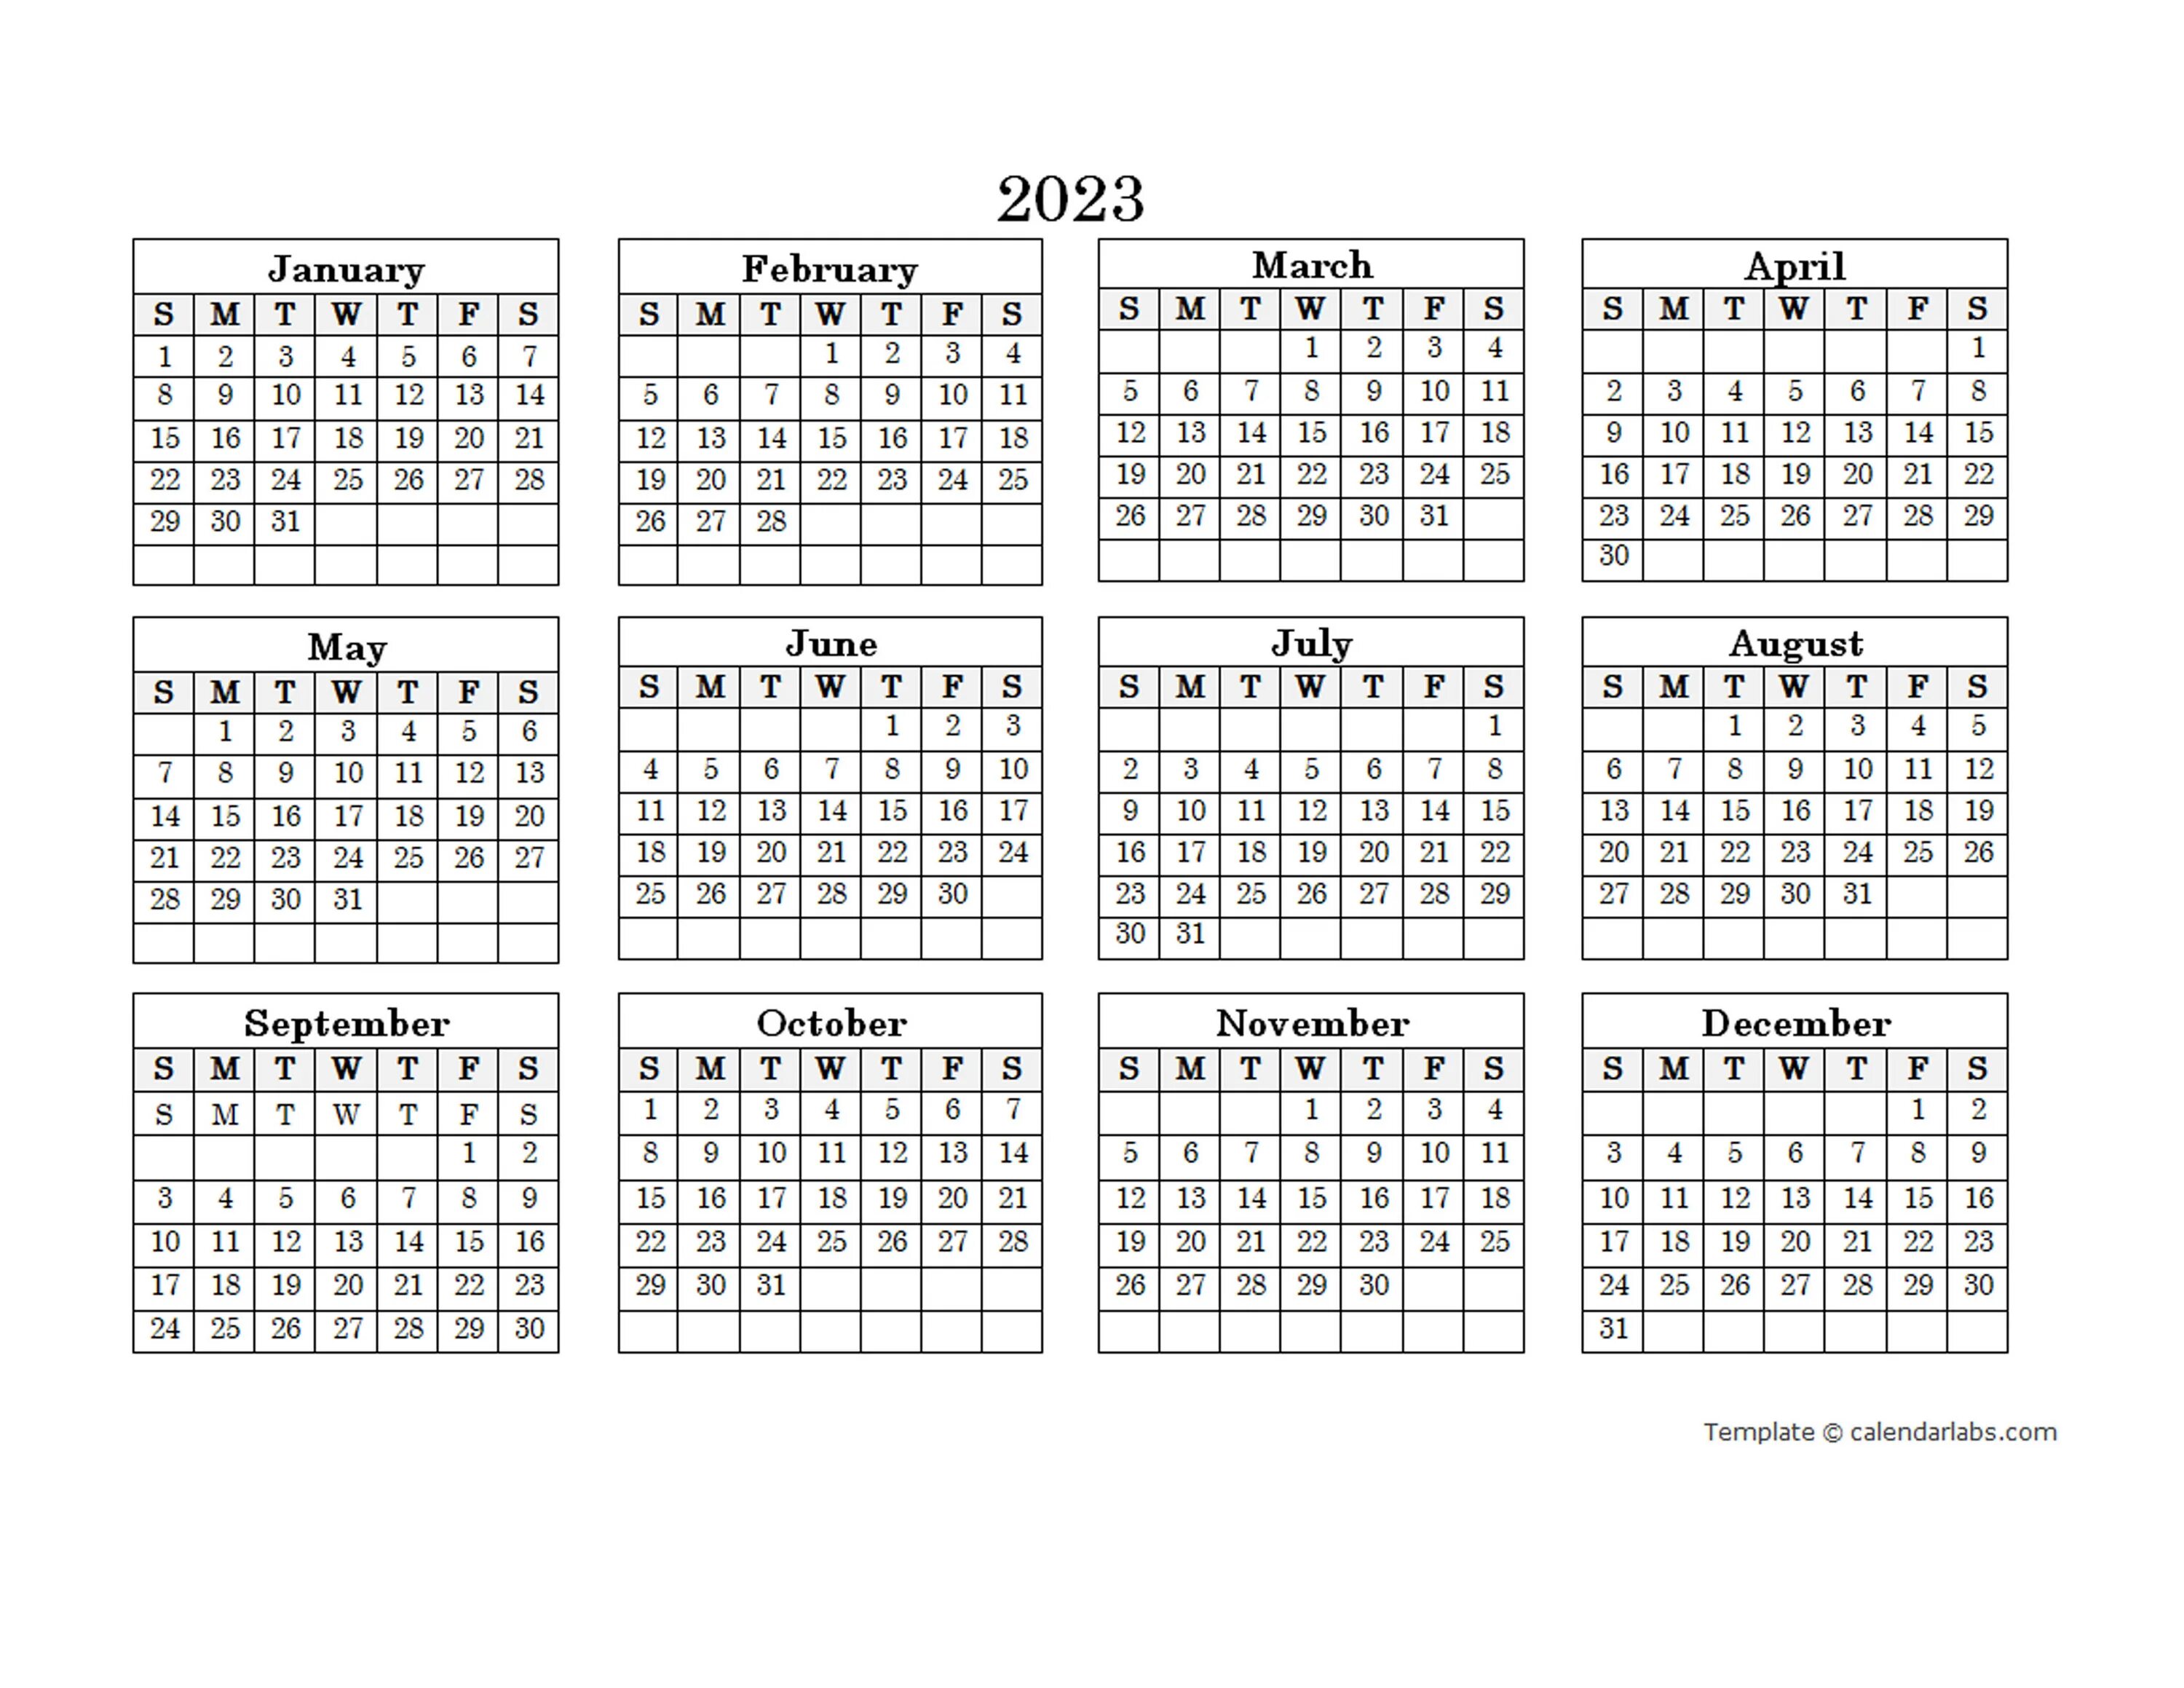 Календарь 2023. Календарь 2023 а4. Календарь на 2023 год. Календарь 2023 пдф.